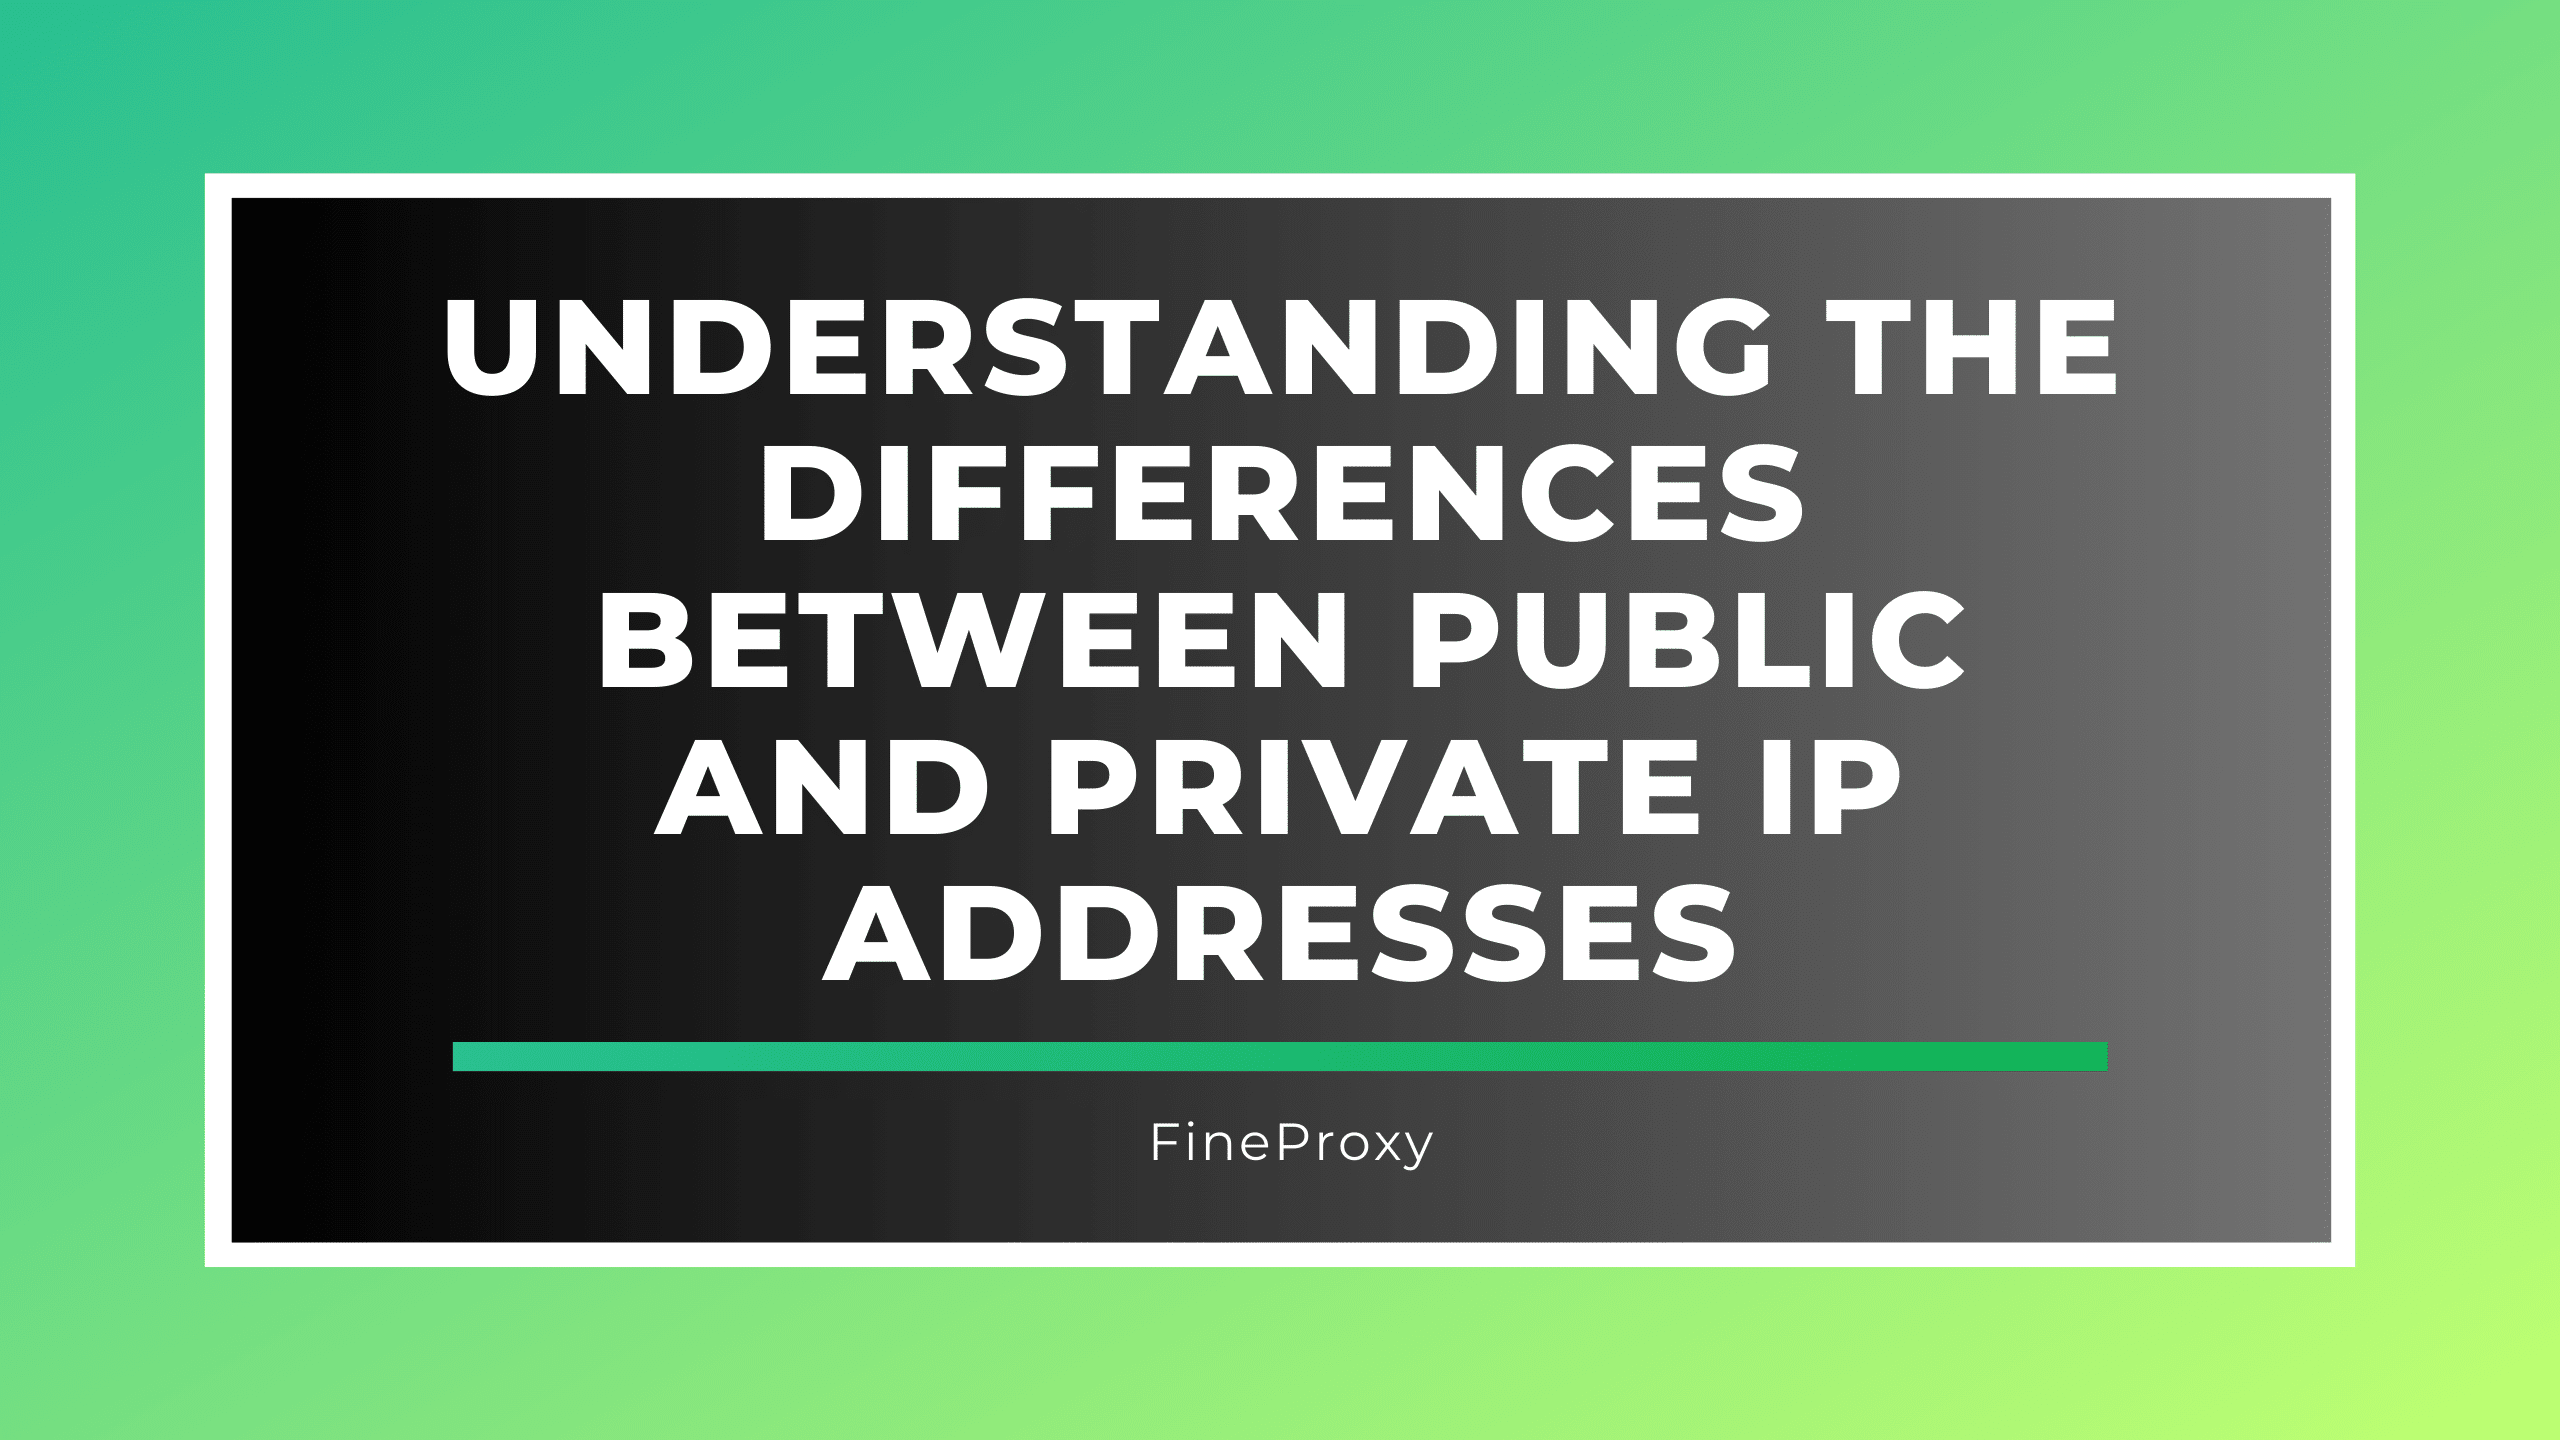 Pochopení rozdílů mezi veřejnými a soukromými IP adresami